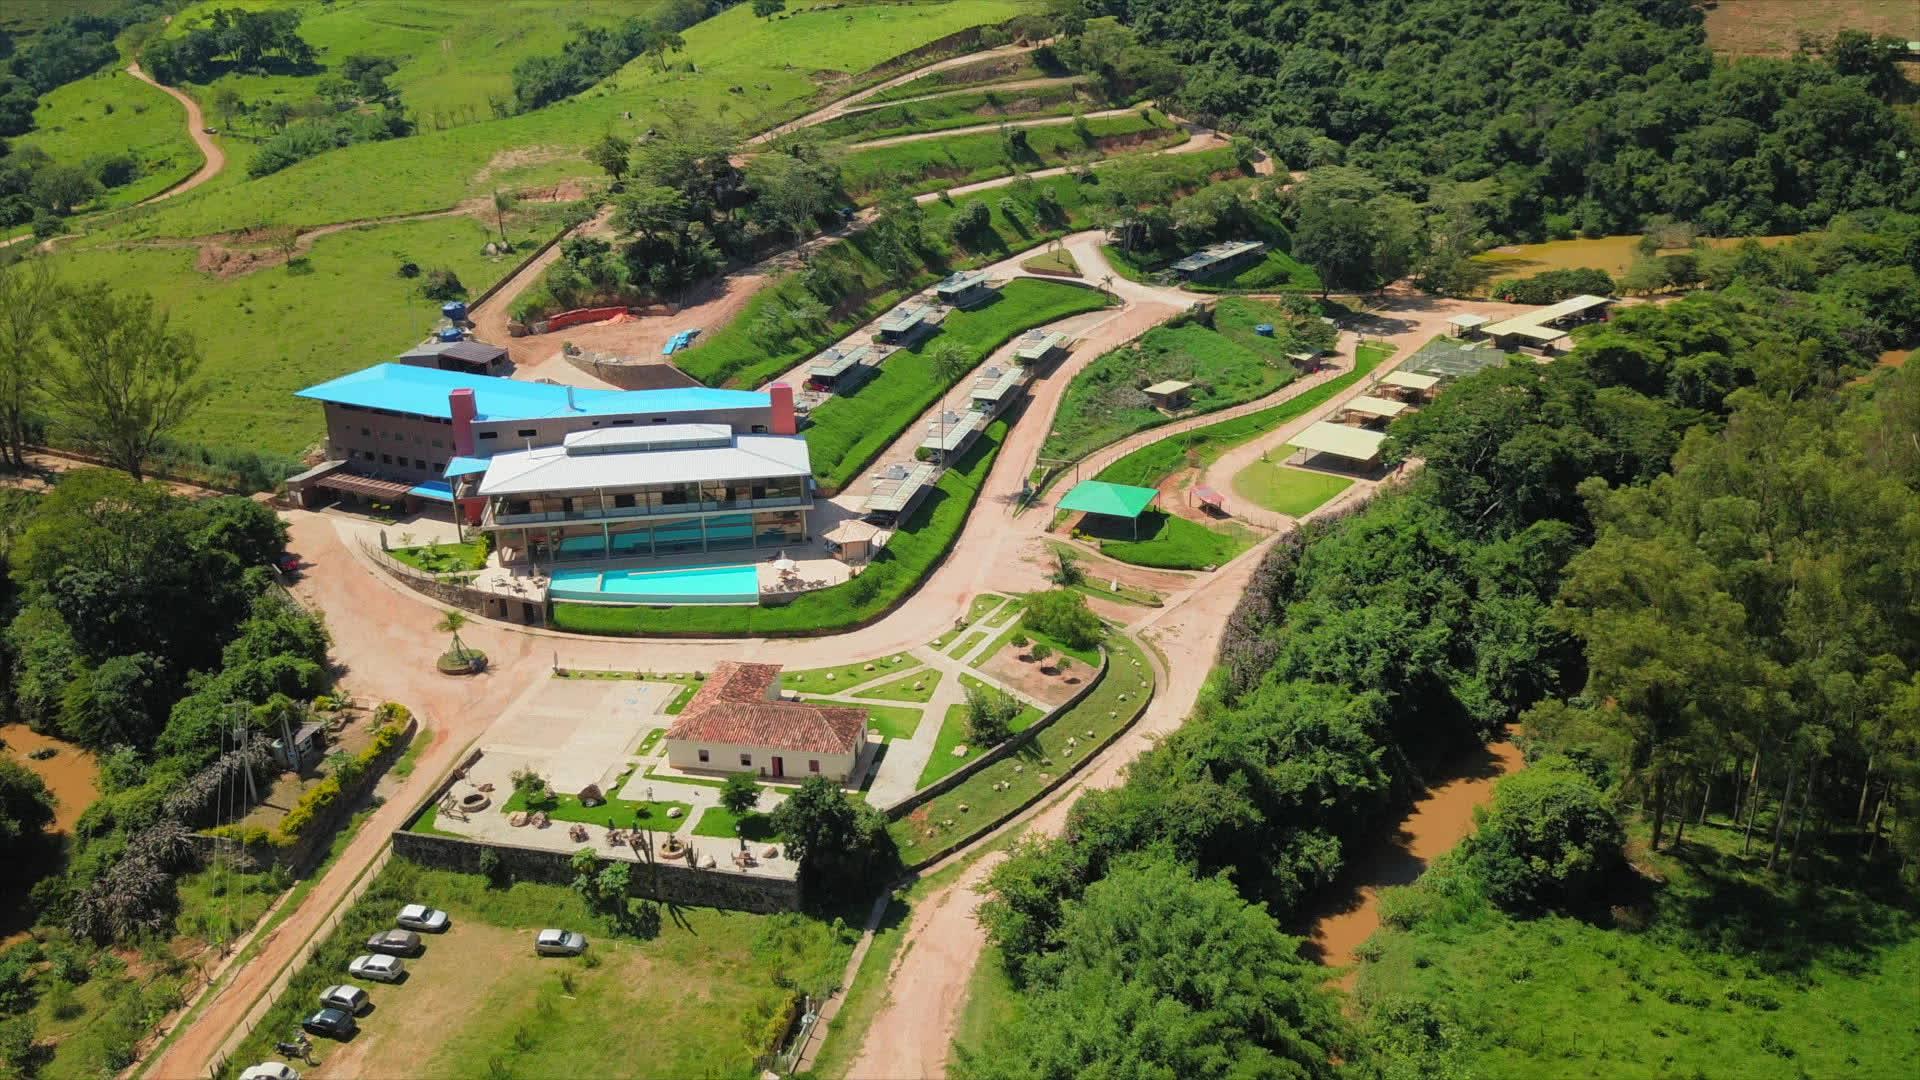 Top Sector: Hotel Fazenda Campo dos Sonhos, na Estância